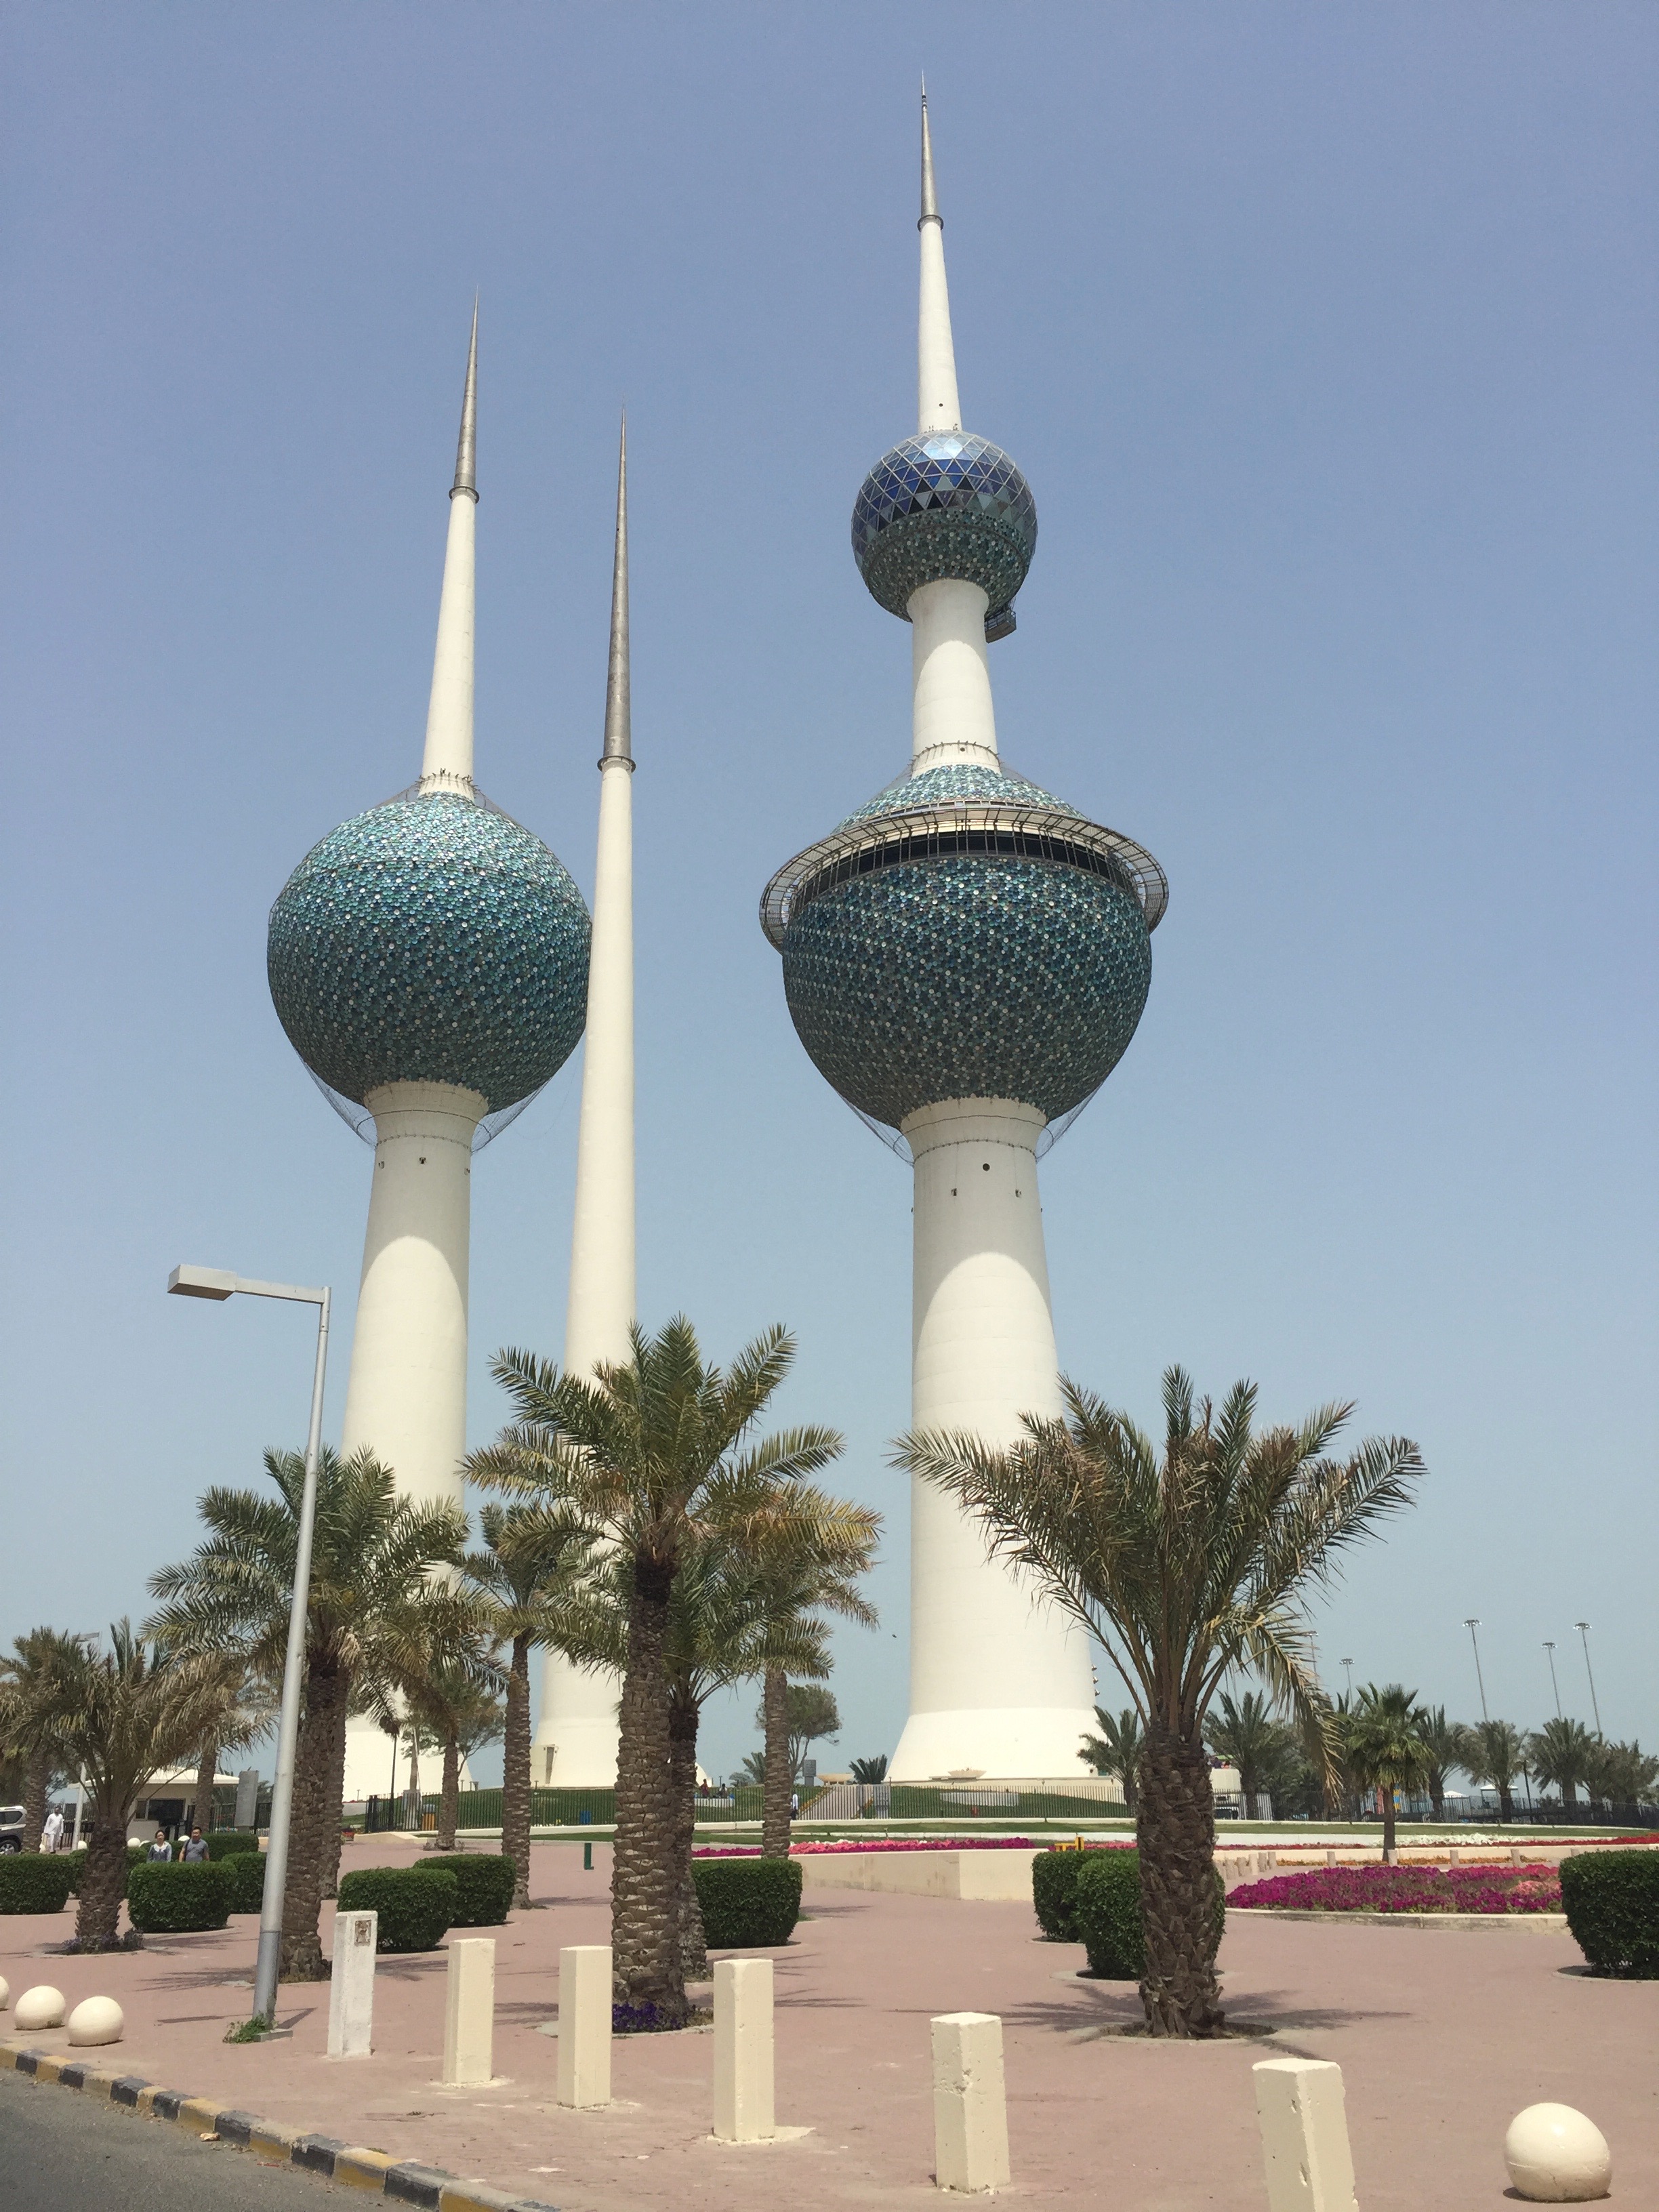 A Kuwait Towers. A város egyik nevezetessége, eredetileg víztoronynak épült. Mára kissé átalakult a funkciója és víztározó mellett étterem és kilátó is üzemel bennük.